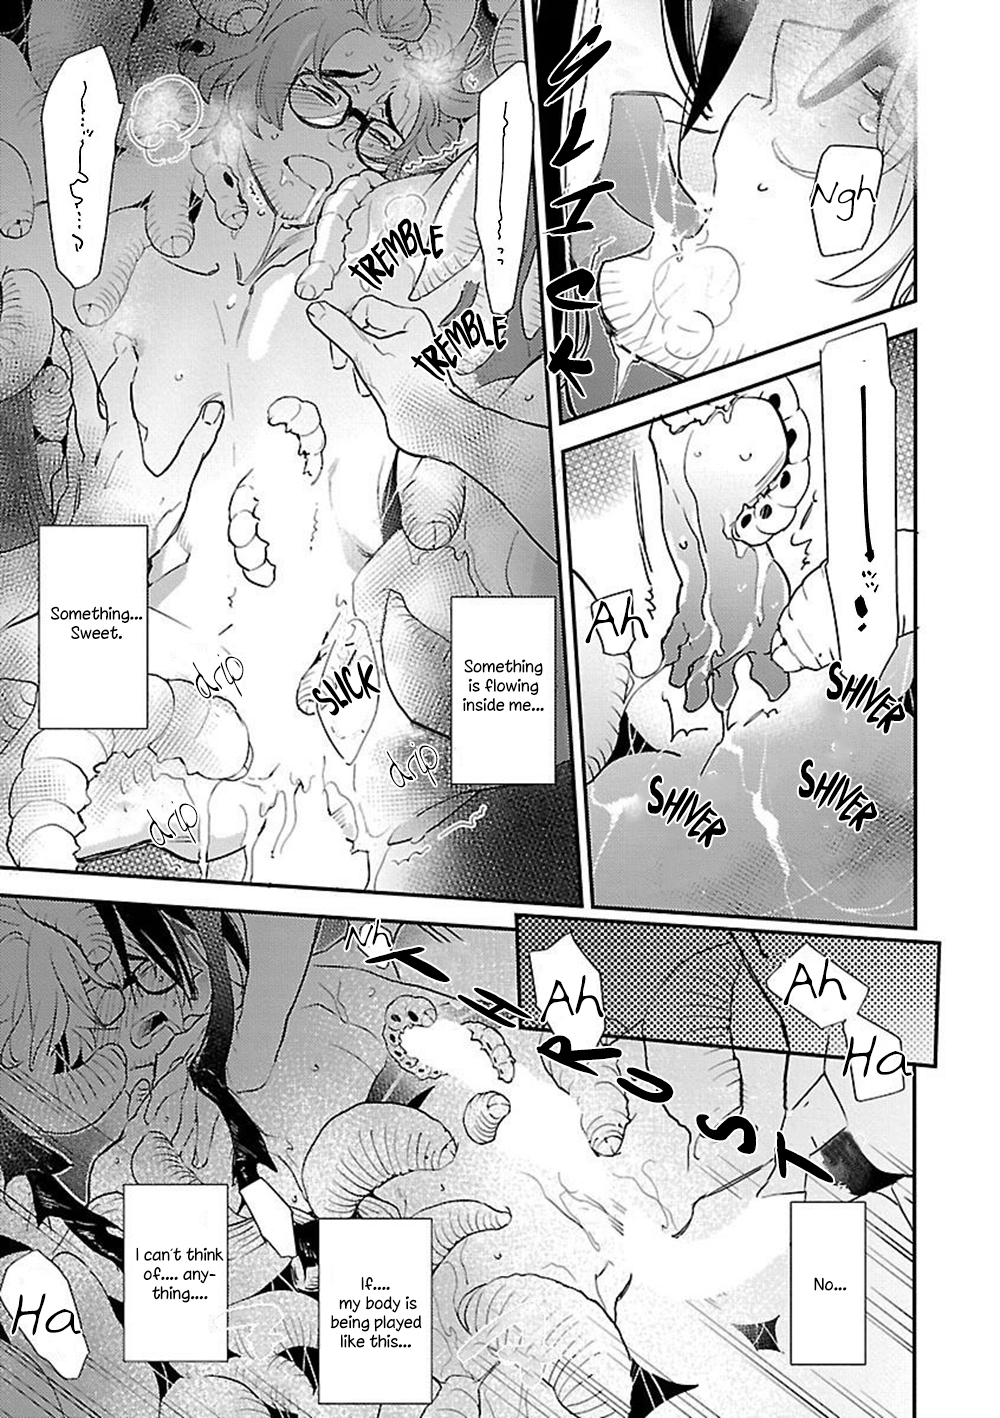 Bakemono BL (Anthology) Vol. 1 Ch. 6 Kowaku (by Kirima Moccori)